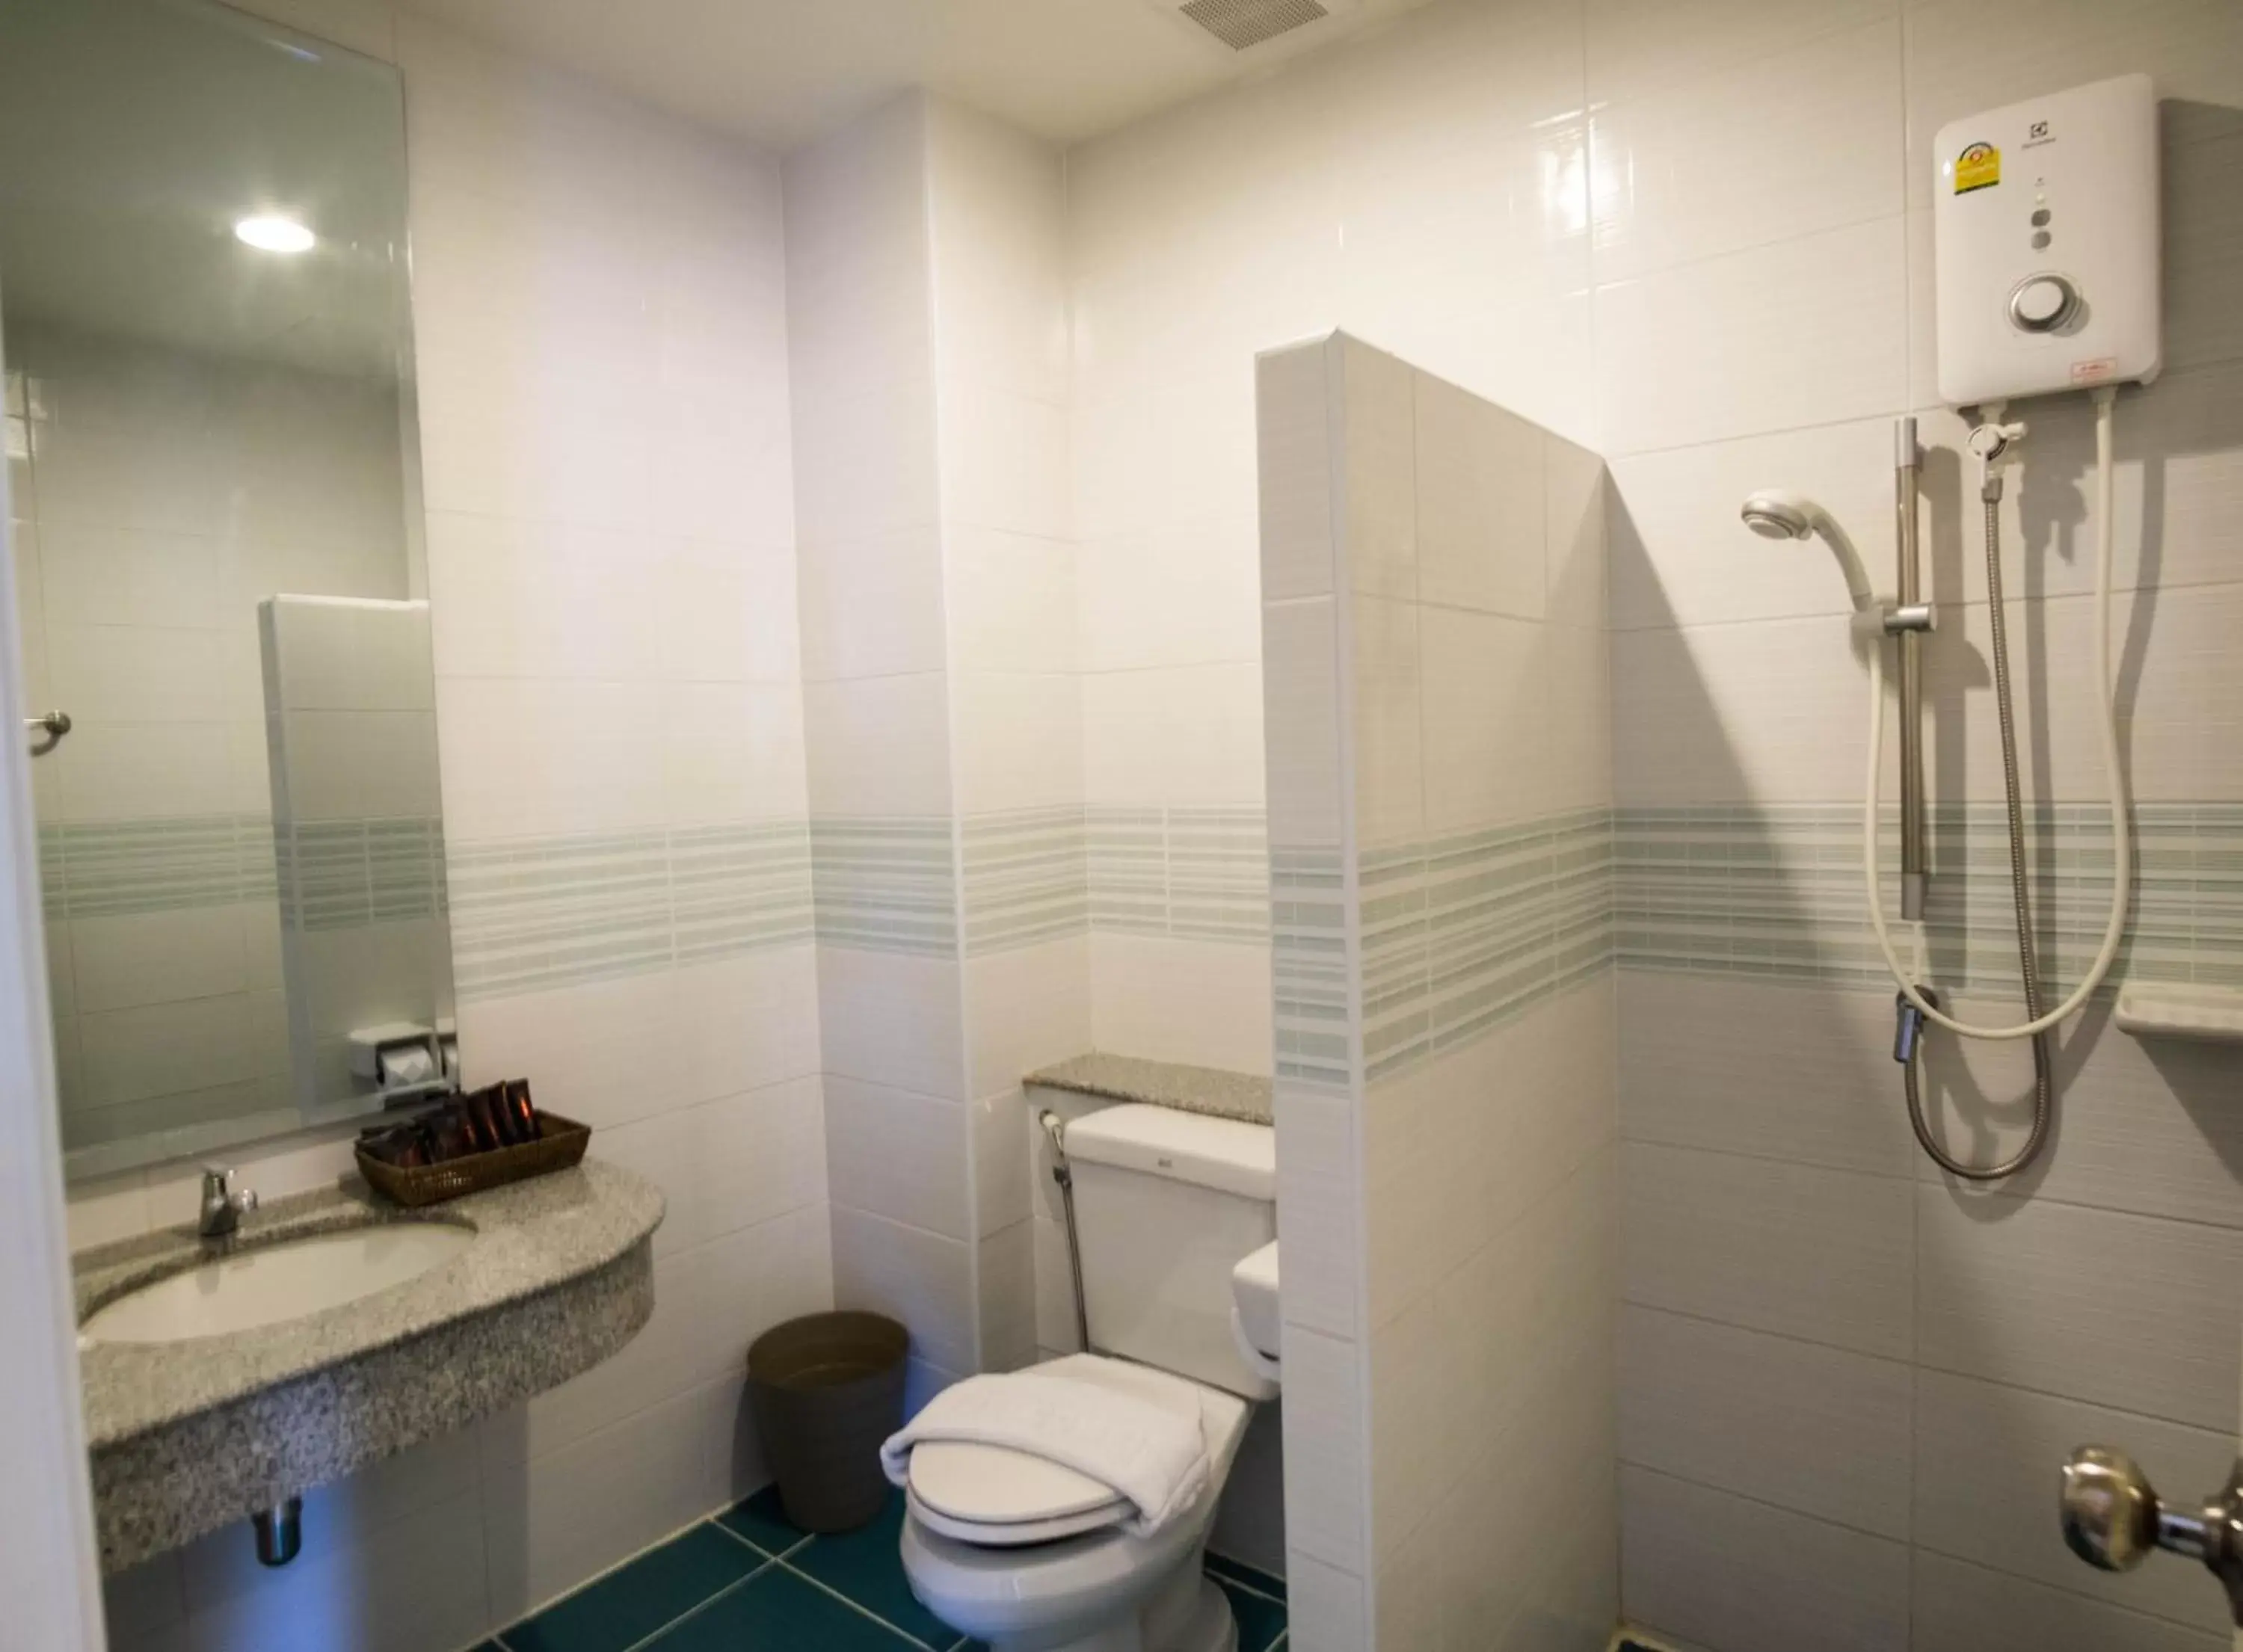 Bathroom in FX Hotel Pattaya